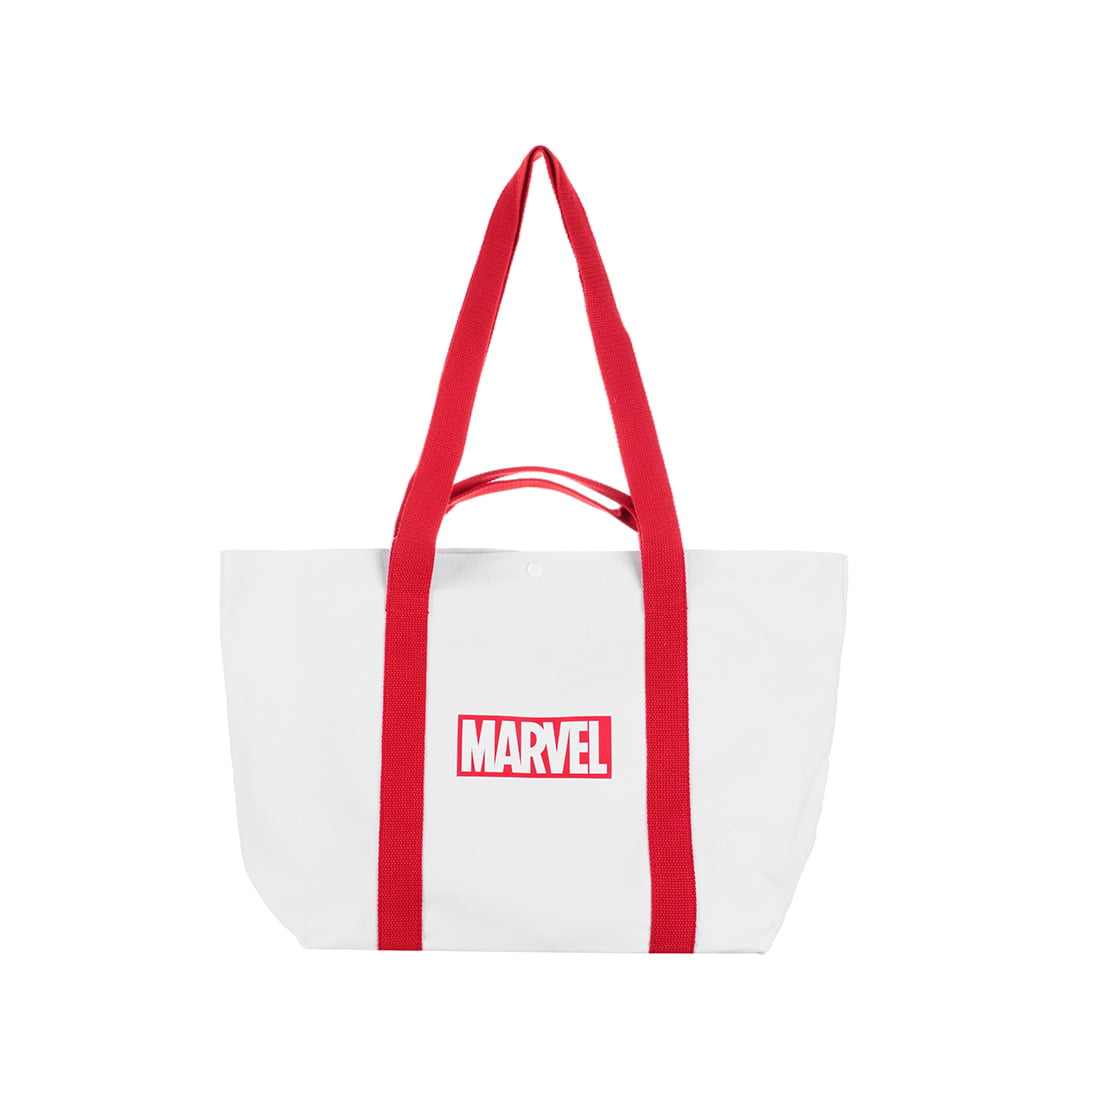 MINISO Marvel Shoulder Bag Tote Large Capacity Messenger Bag,Red